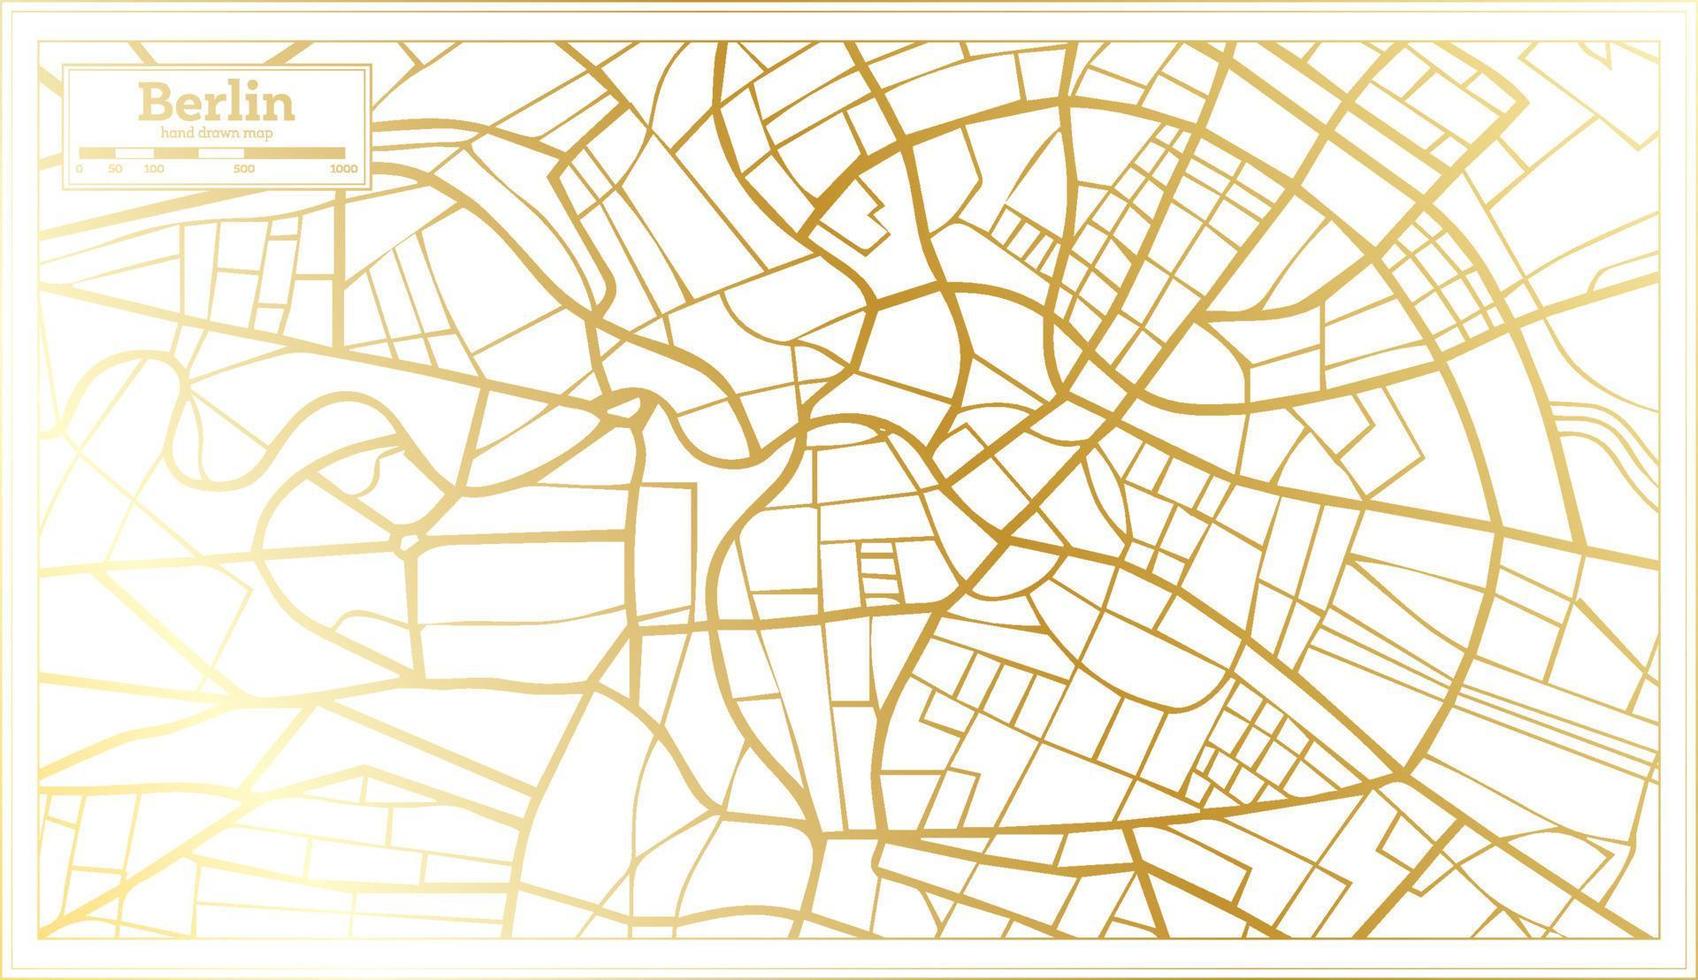 plan de la ville de berlin allemagne dans un style rétro de couleur dorée. carte muette. vecteur